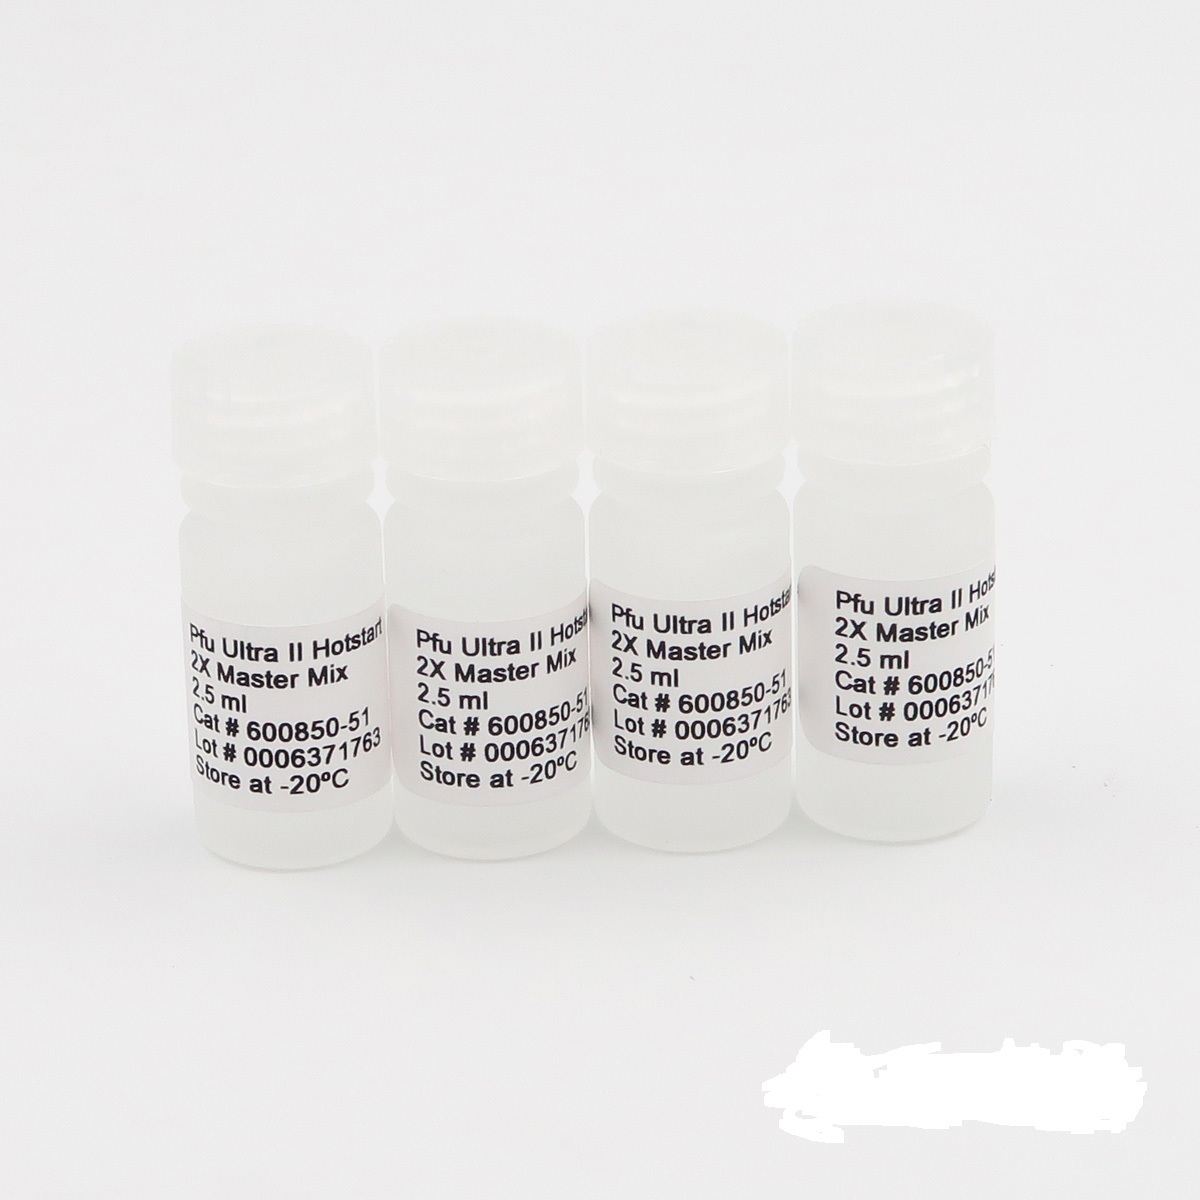 辣椒斑驳病毒RT-PCR试剂盒